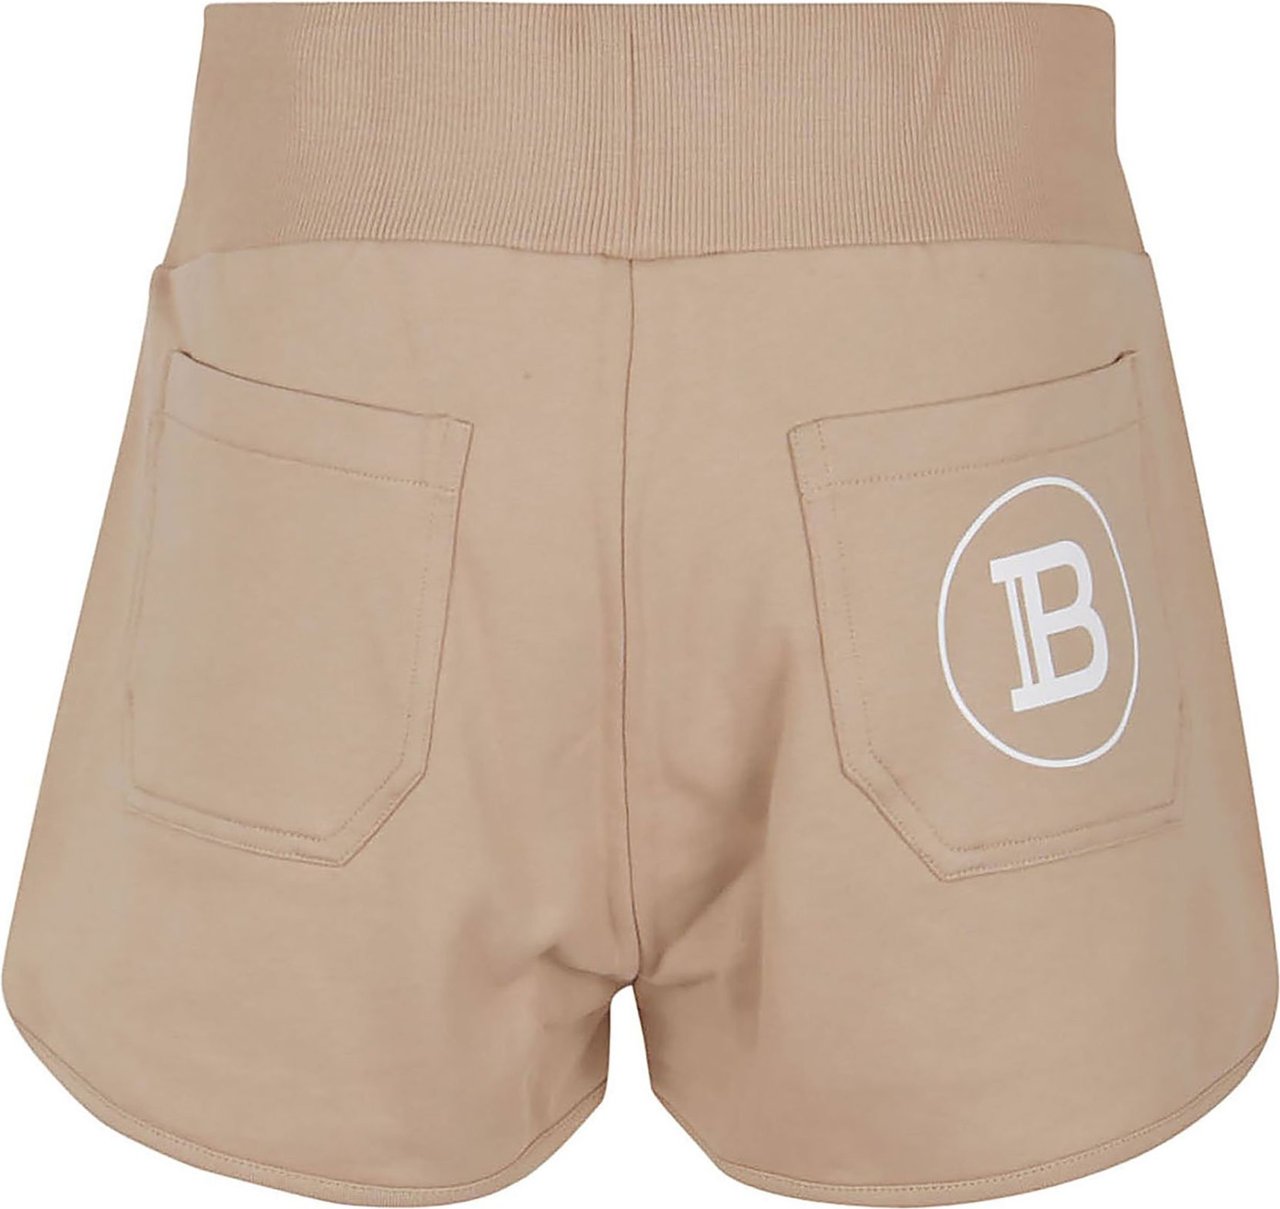 Balmain B Printed Jersey Shorts Divers